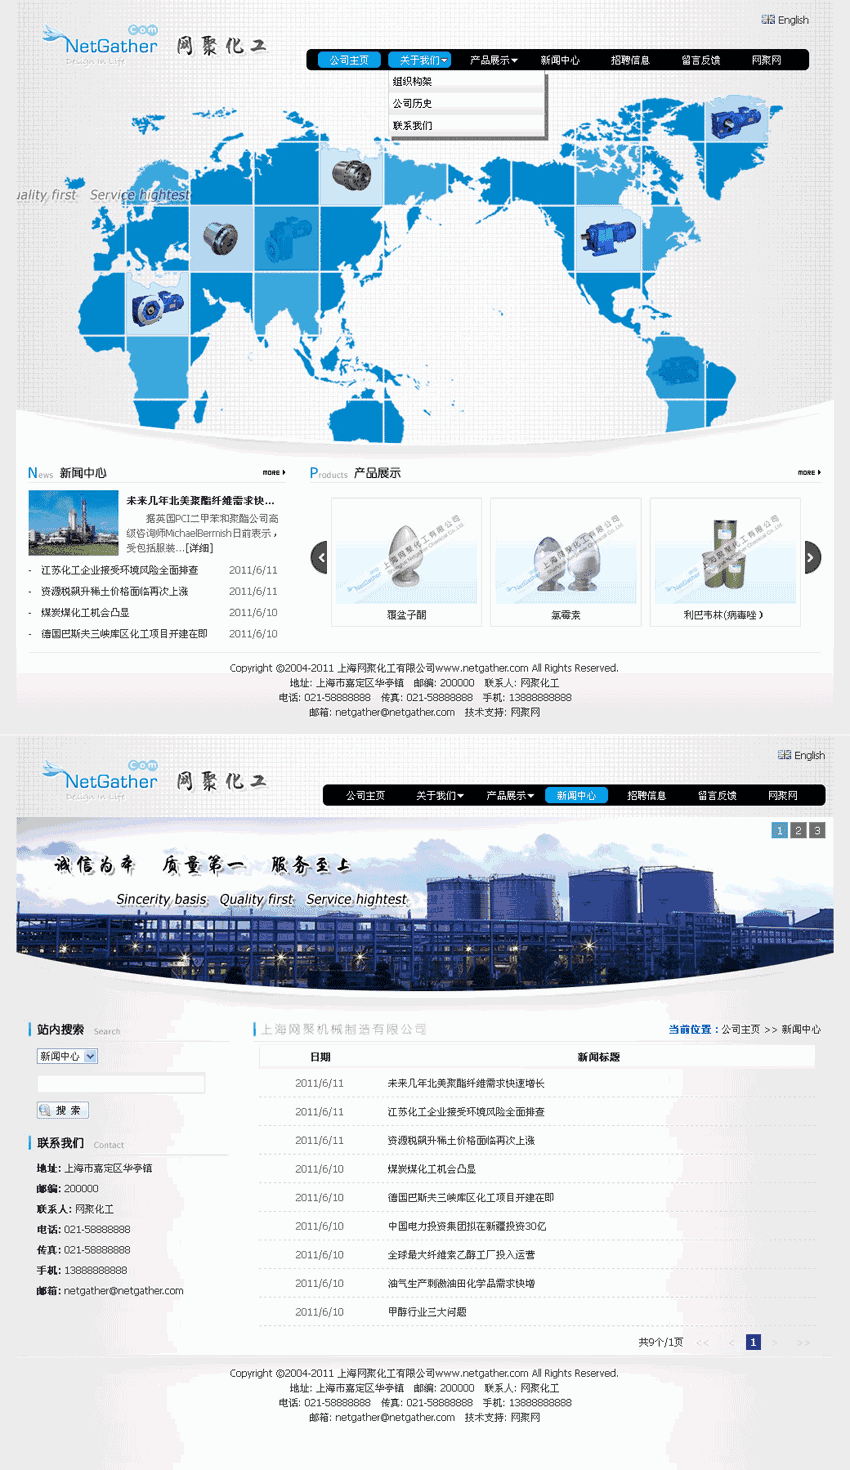 上海网聚机械制造有限公司公司产品展示响应式网站WordPress模板演示图